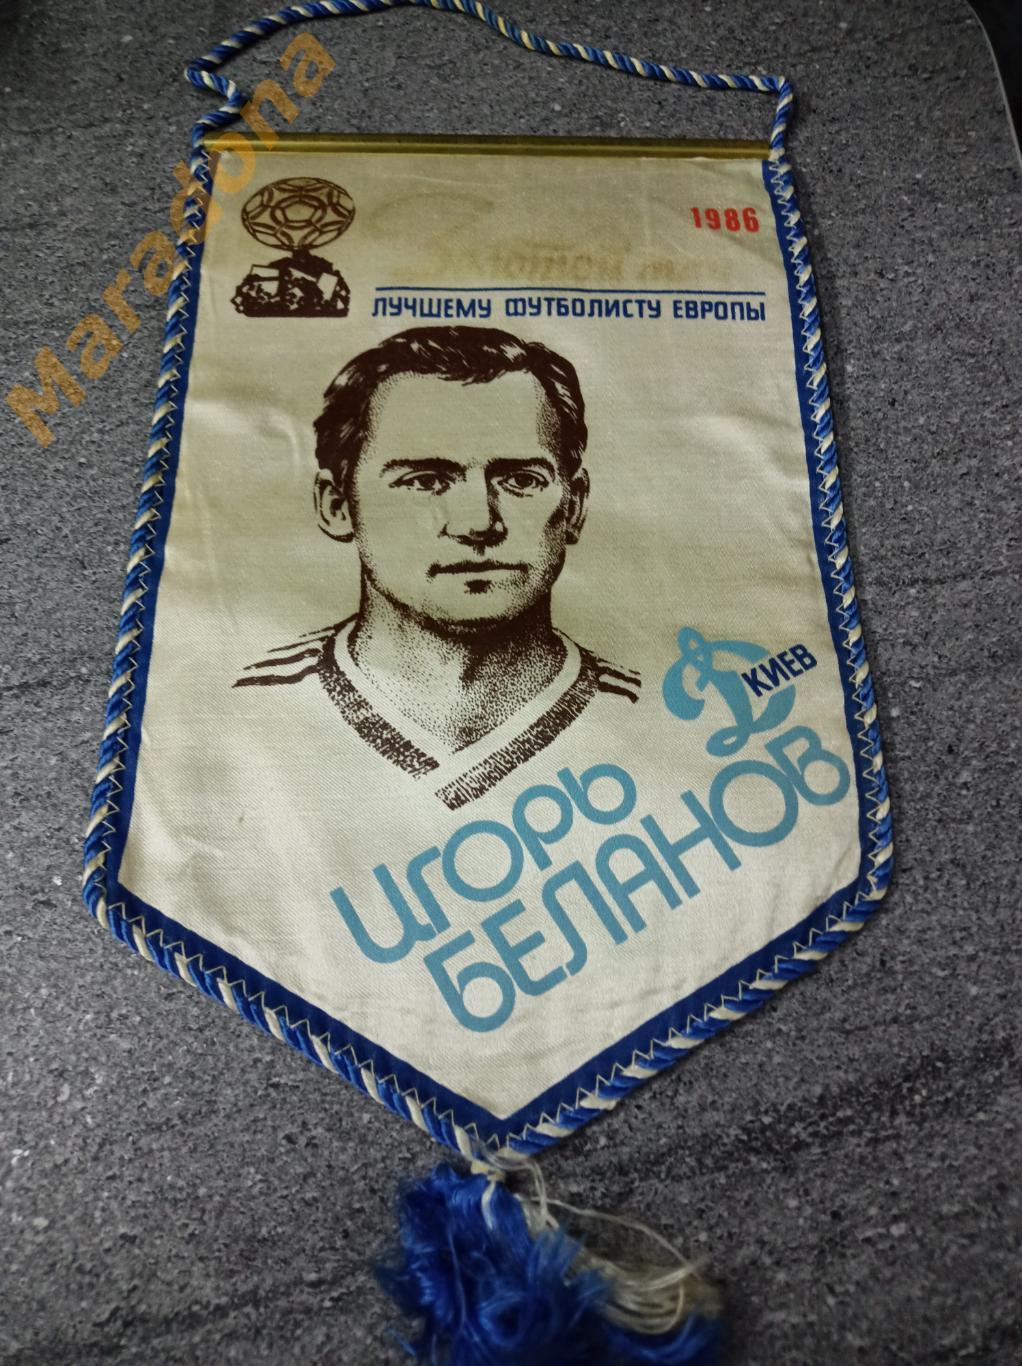 Вымпел Лучший футболист Европы Беланов - 1986 Динамо Киев